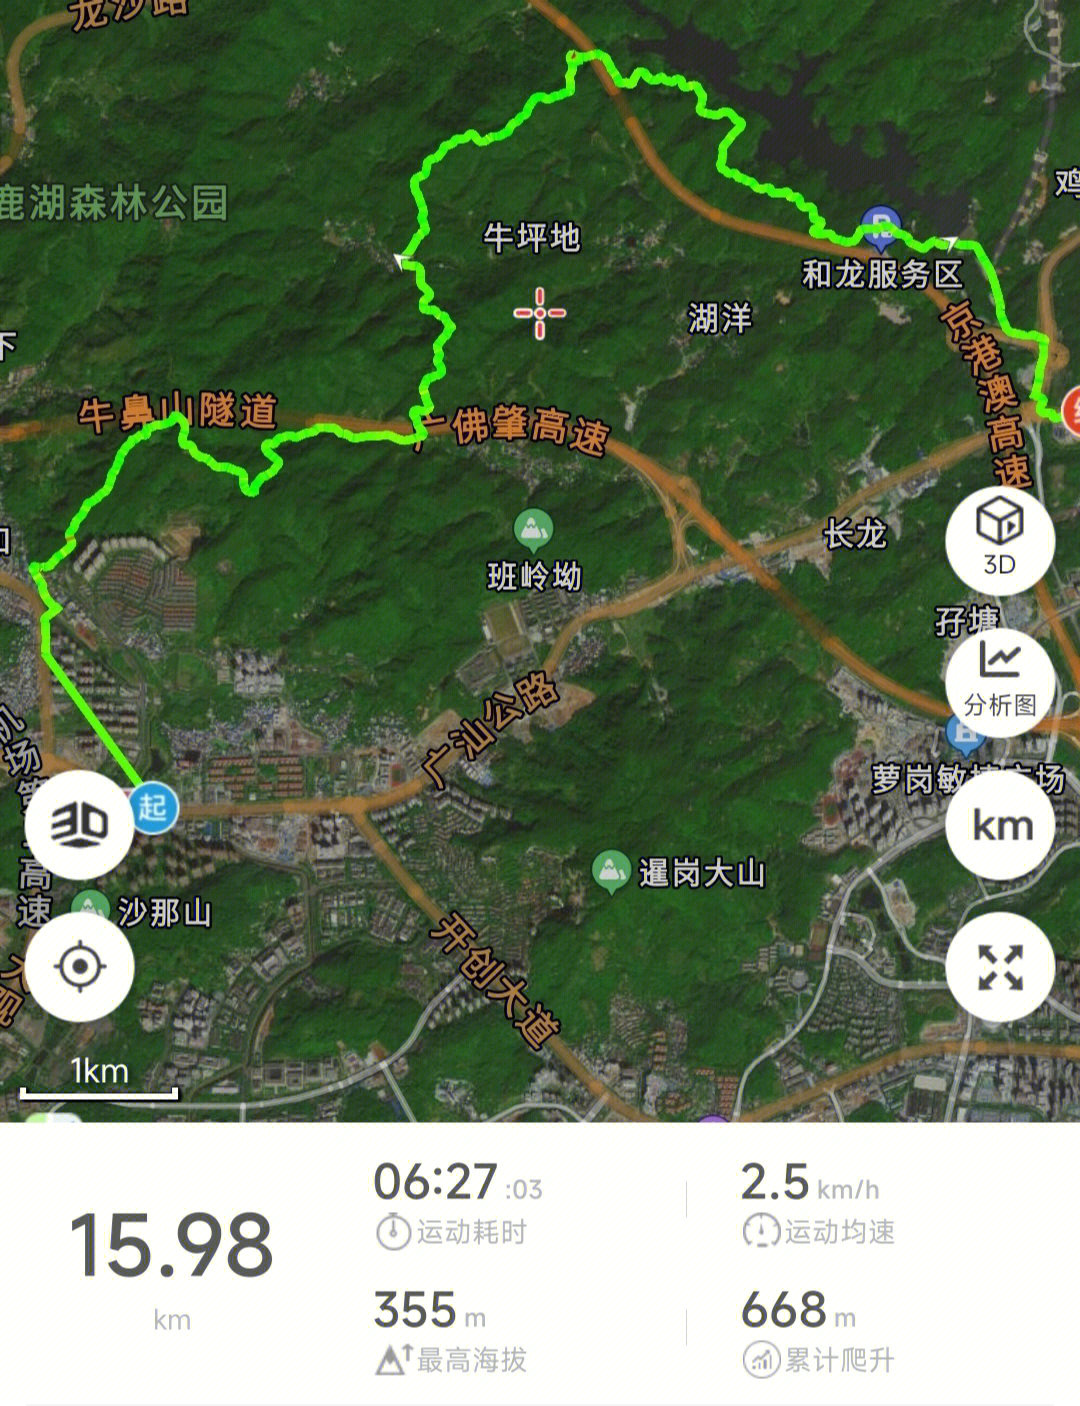 牛木线非常值得推荐广州市内徒步路线